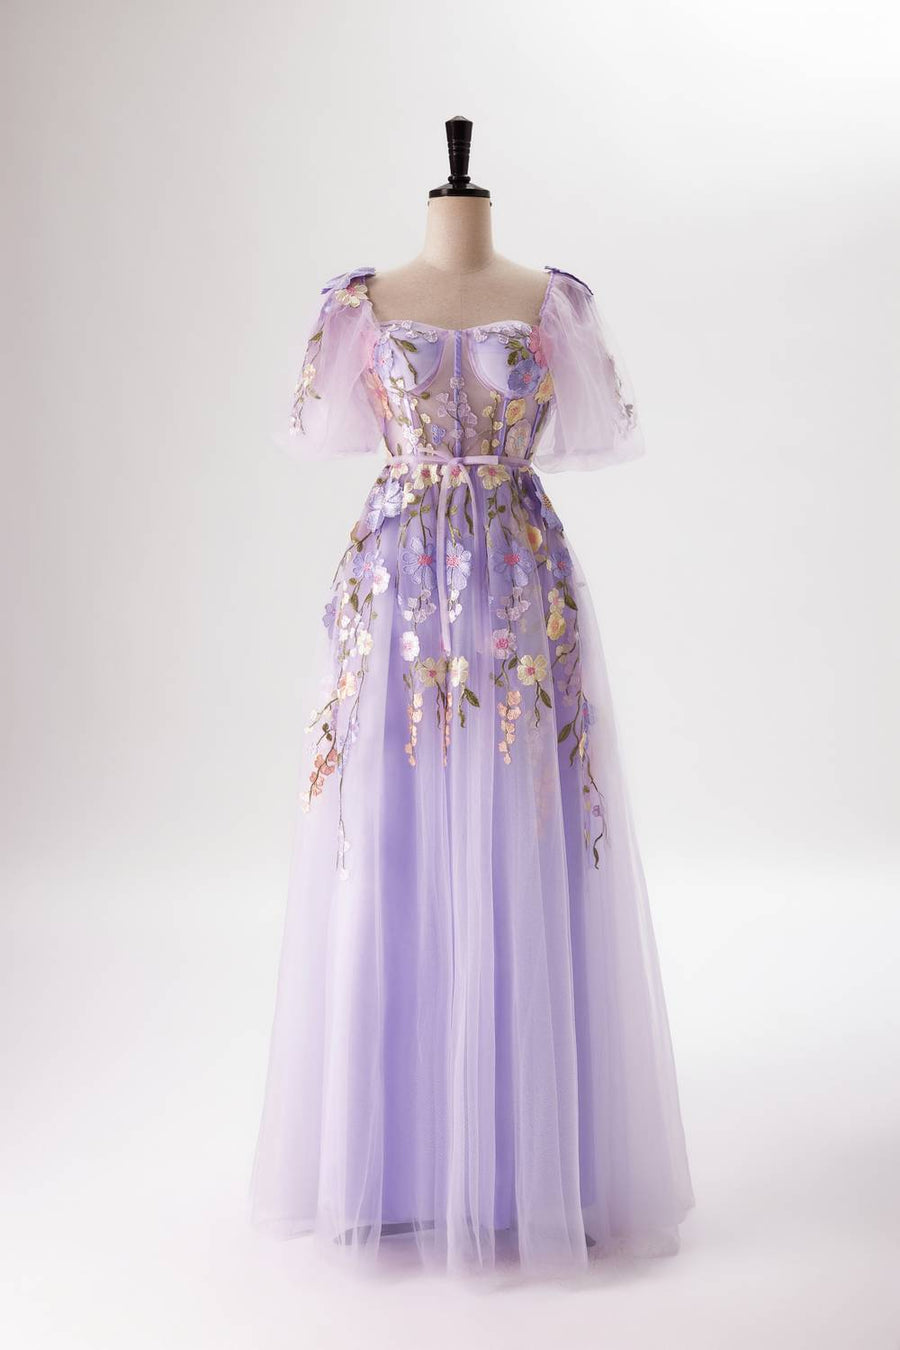 us 4 Lavender Floral Corset A-line Long Dress